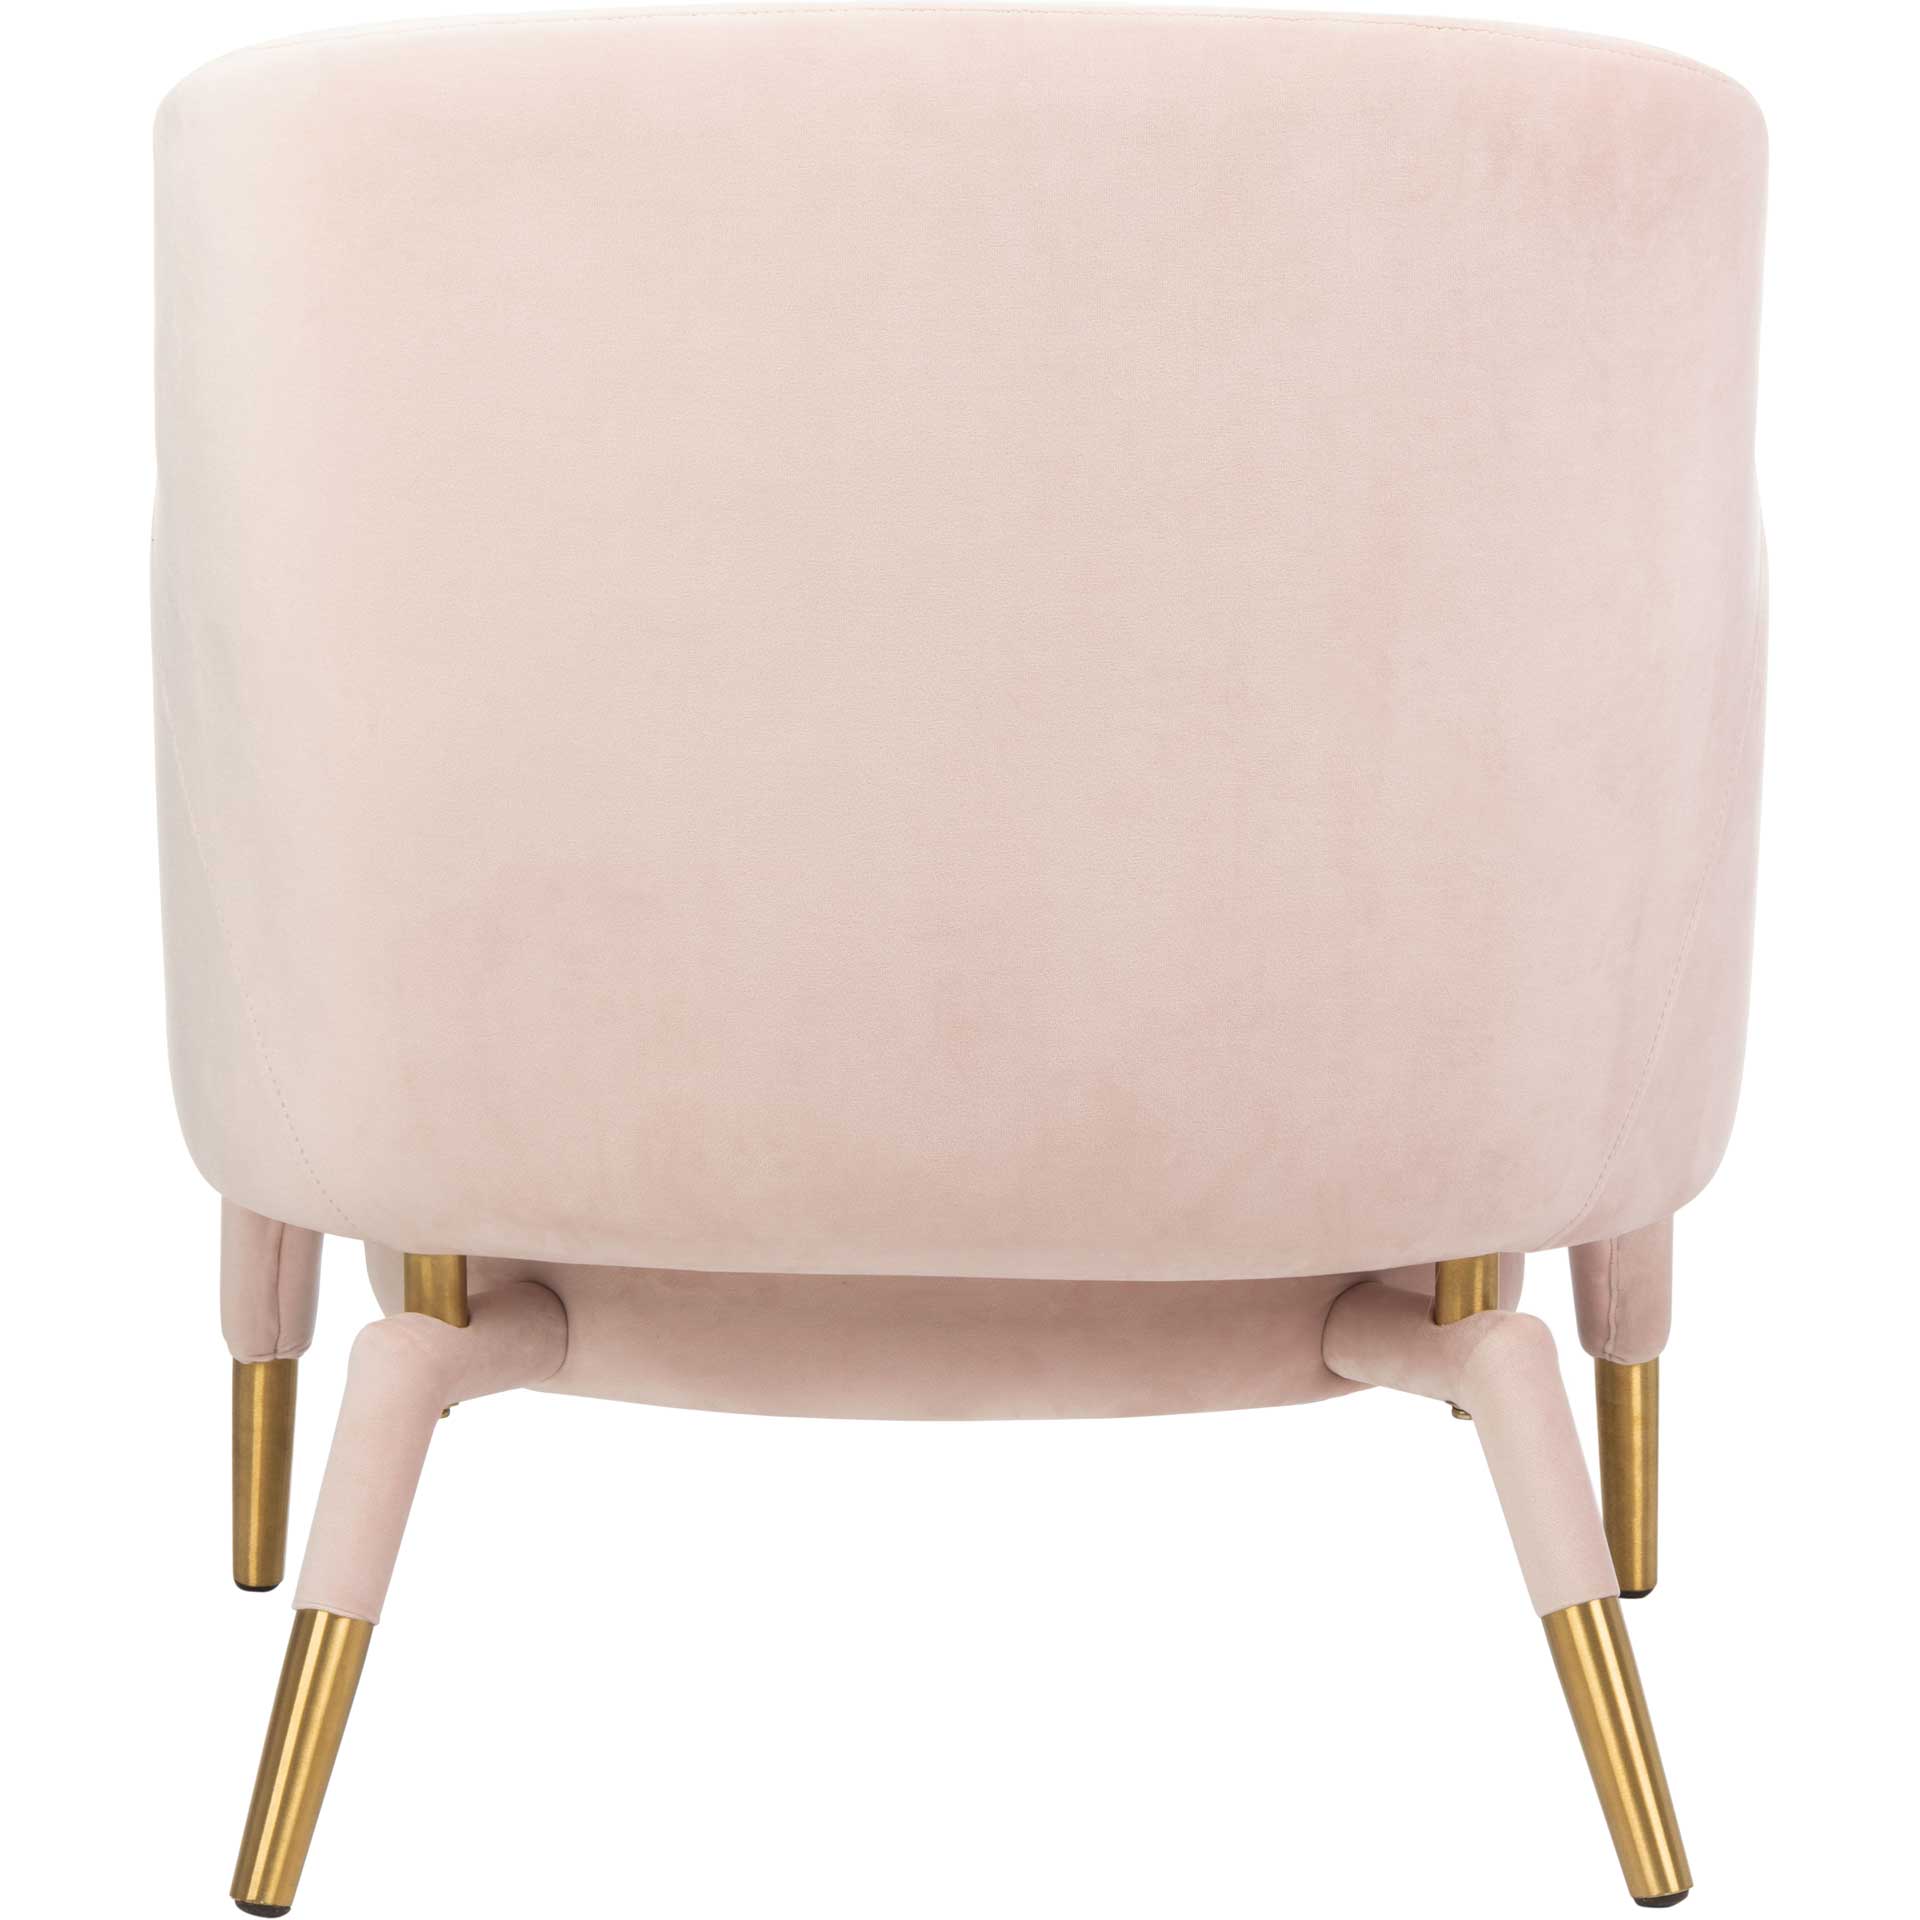 Tobias Velvet Arm Chair Light Pink